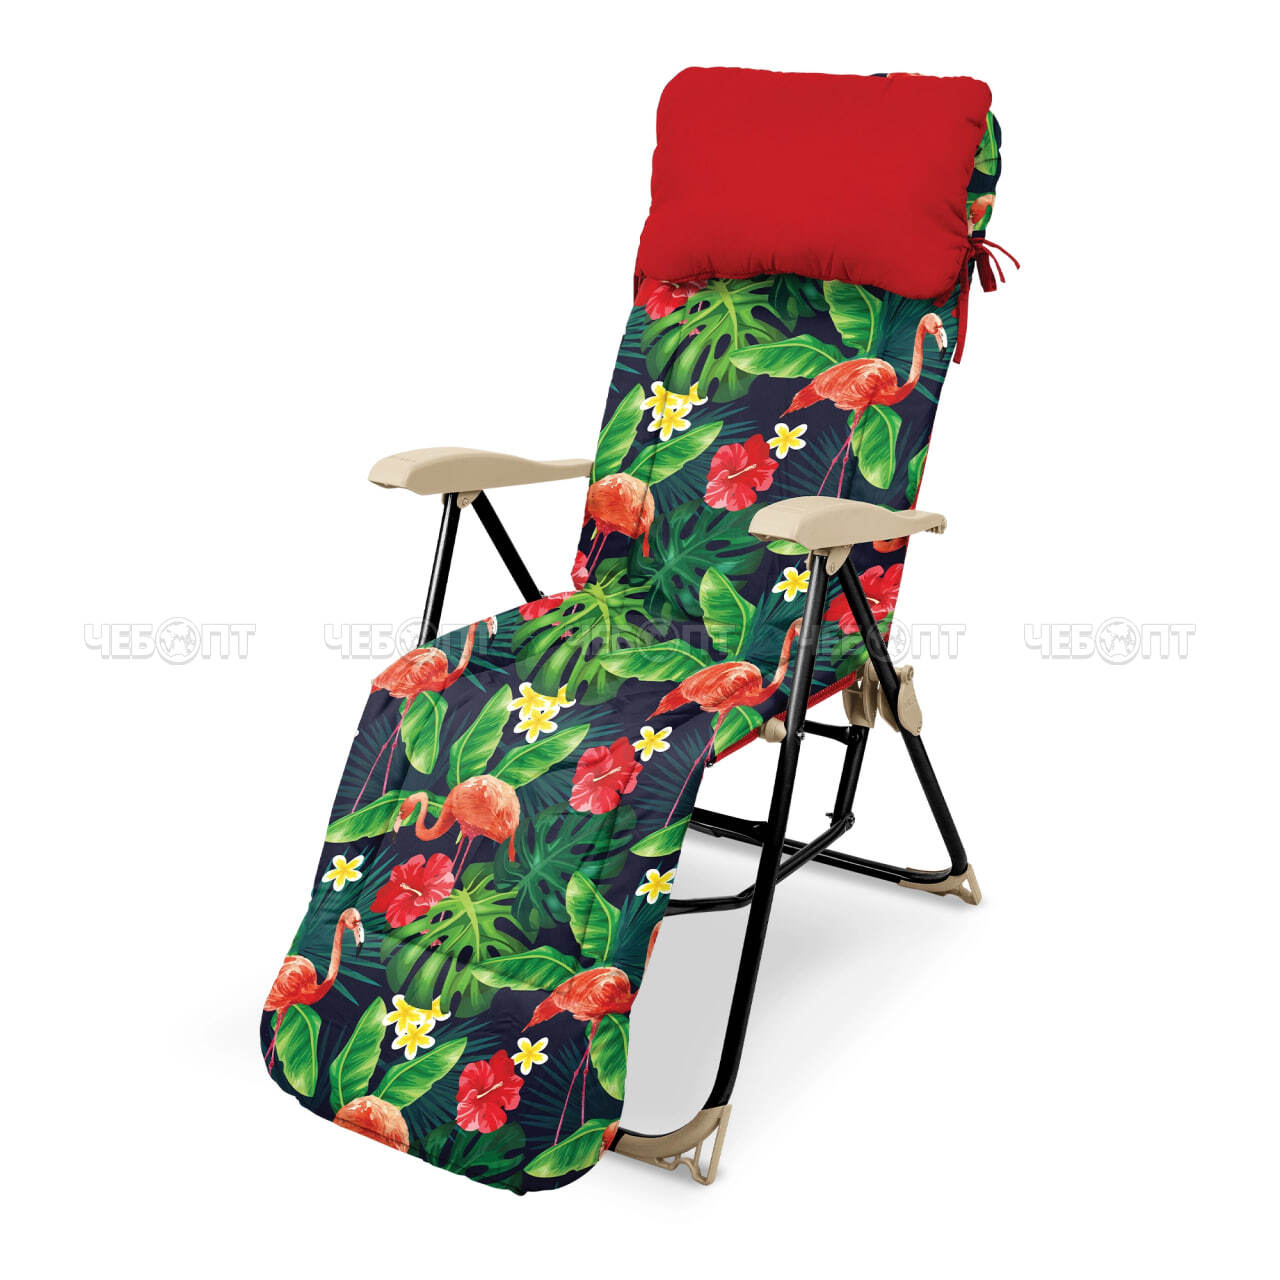 Кресло - шезлонг С ФЛАМИНГО складное 820*590*1170 мм, со съемным матрасом и подушкой, нагрузка 100 кг арт. ННК5/F NIKA [1]. ЧЕБОПТ.